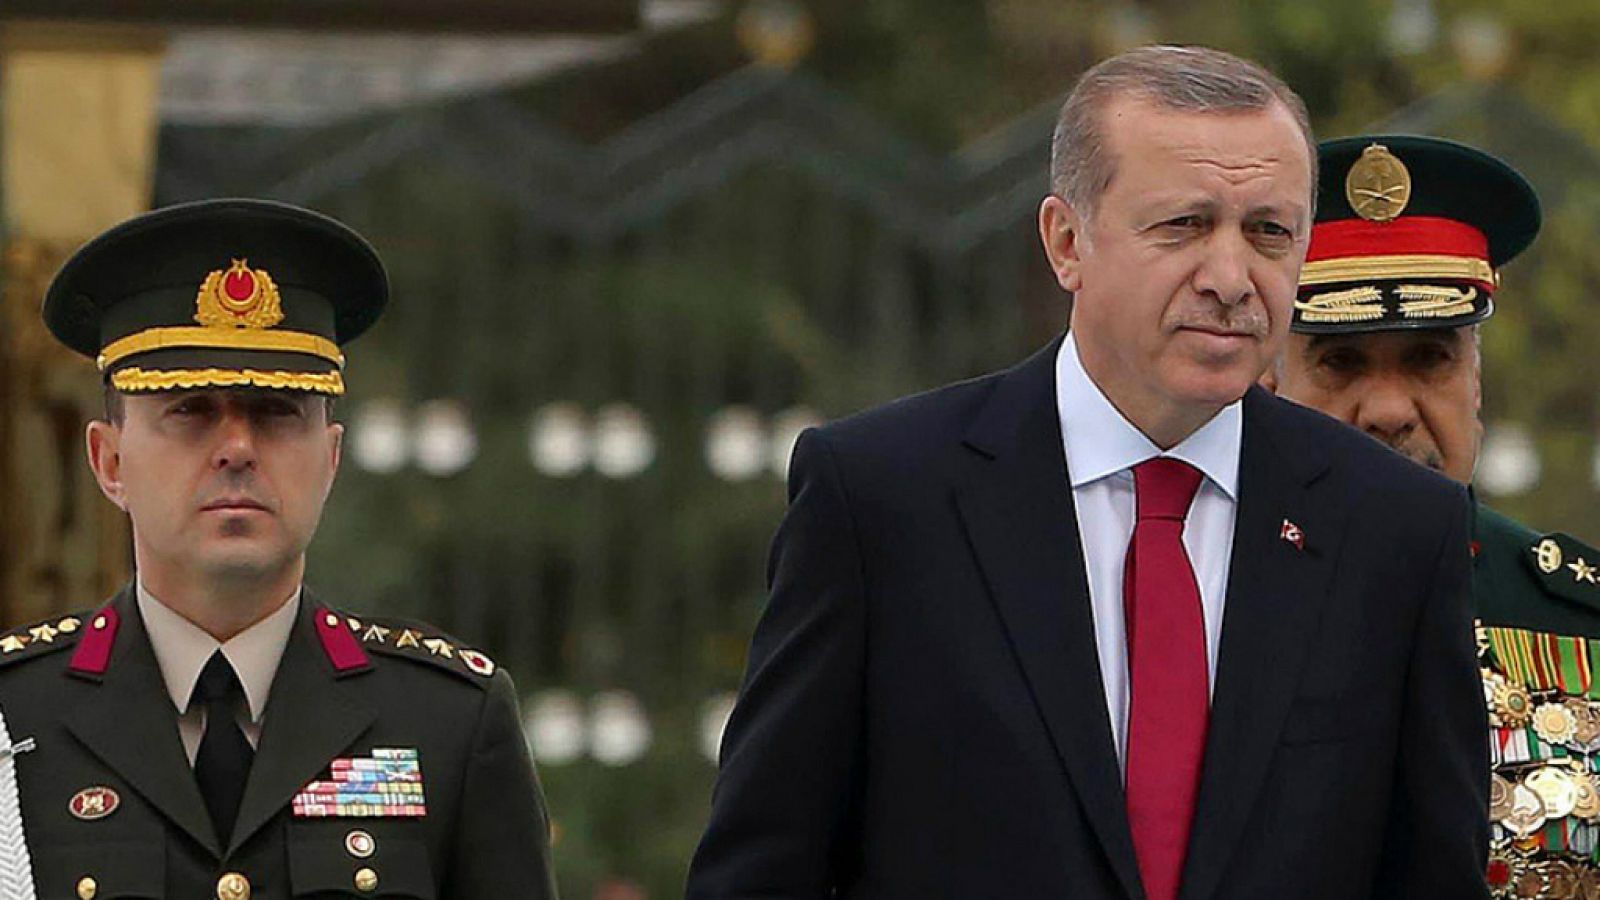 Diario de las 2 - Erdogan toma represalias contra los golpistas - Escuchar ahora